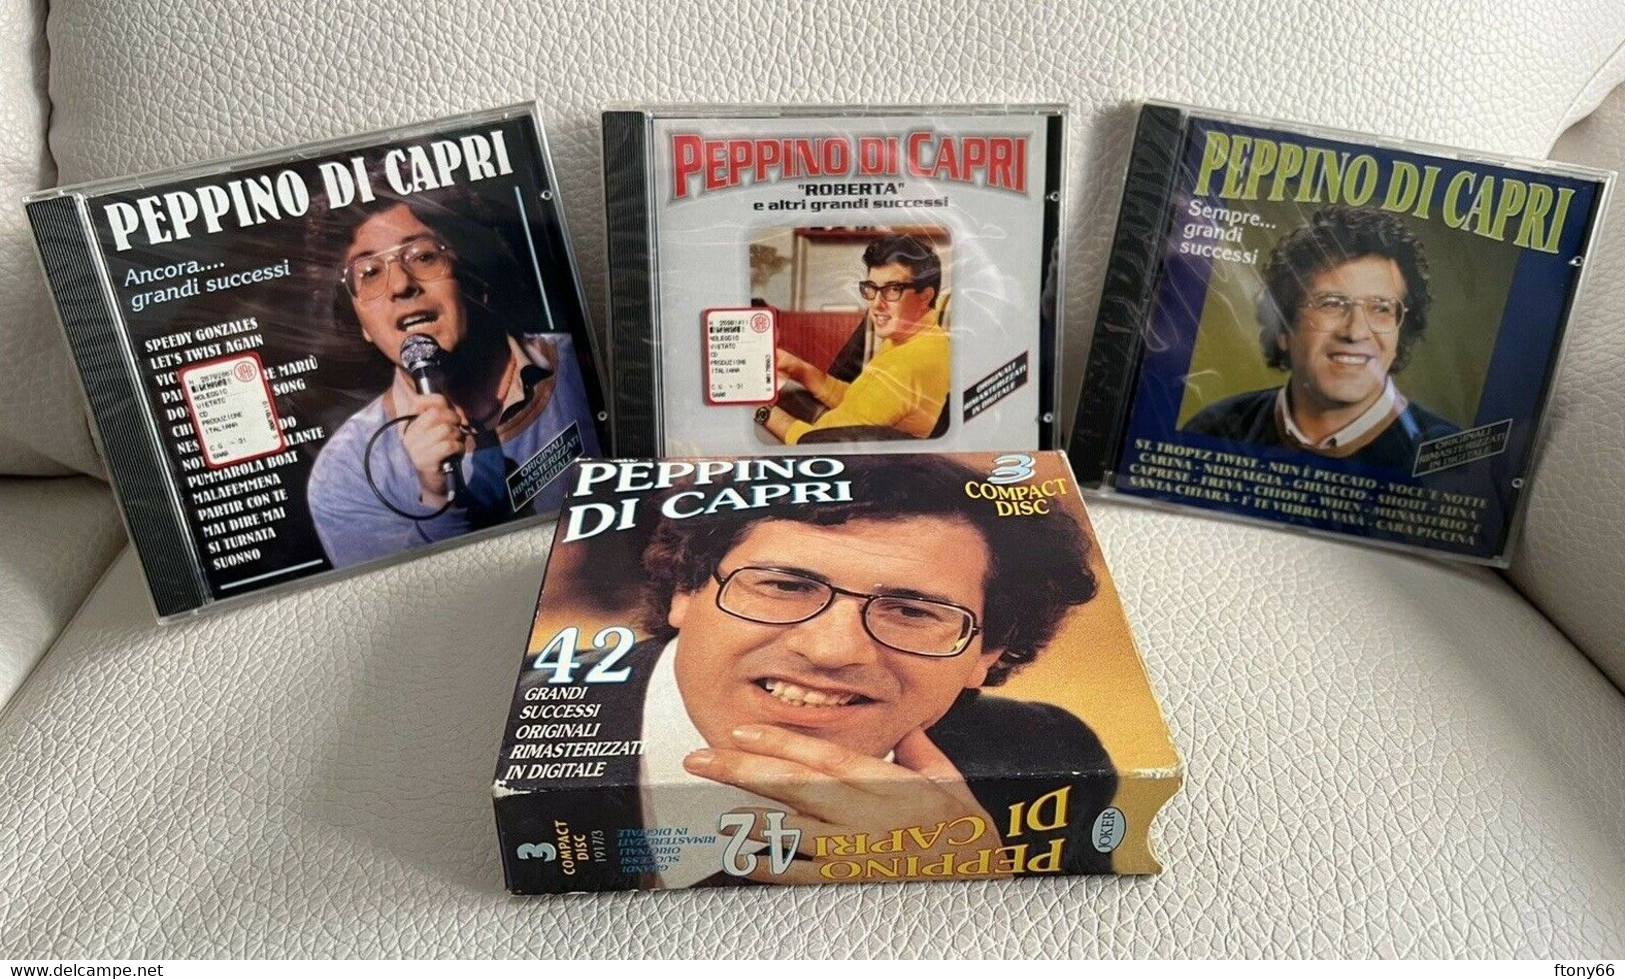 MA22 CD PEPPINO DI CAPRI 42 GRANDI SUCCESSI - COFANETTO 3 CD NUOVI SIGILLATI - Other - Italian Music